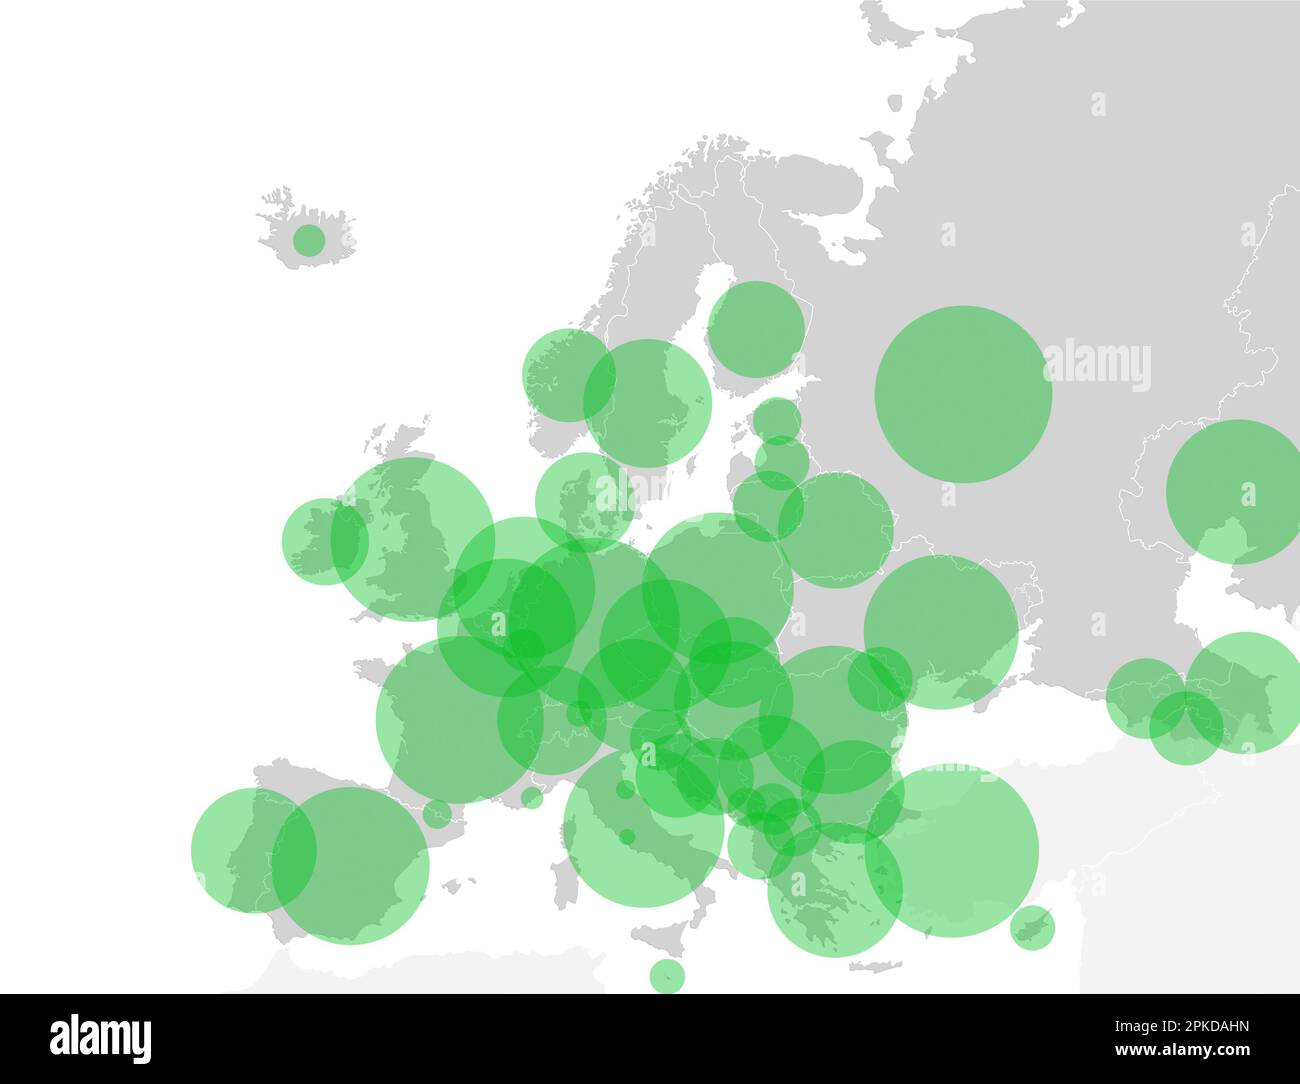 Karte des europäischen Kontinents mit grünen Kreisen, die die Bevölkerung in jedem Land repräsentieren. Grafische Darstellung der Bevölkerung in den europäischen Ländern. Stockfoto